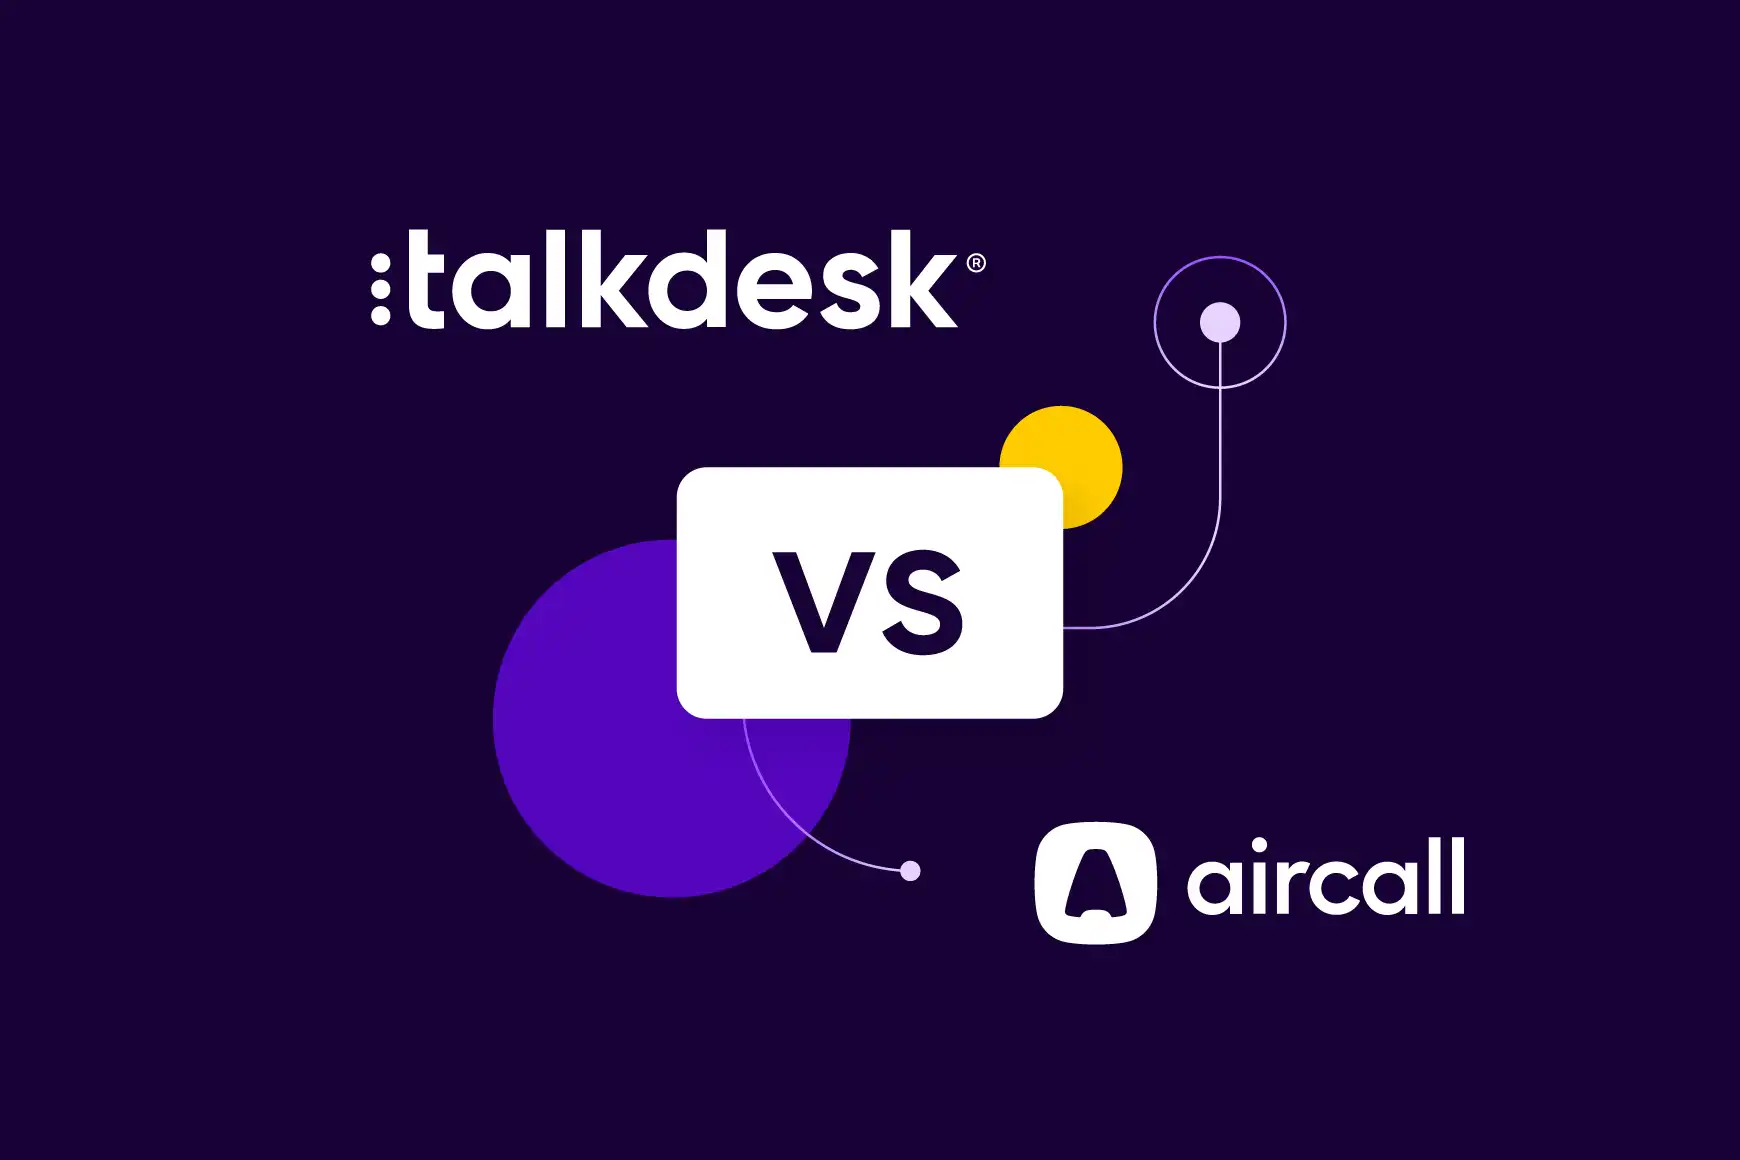 Talkdesk vs. Aircall